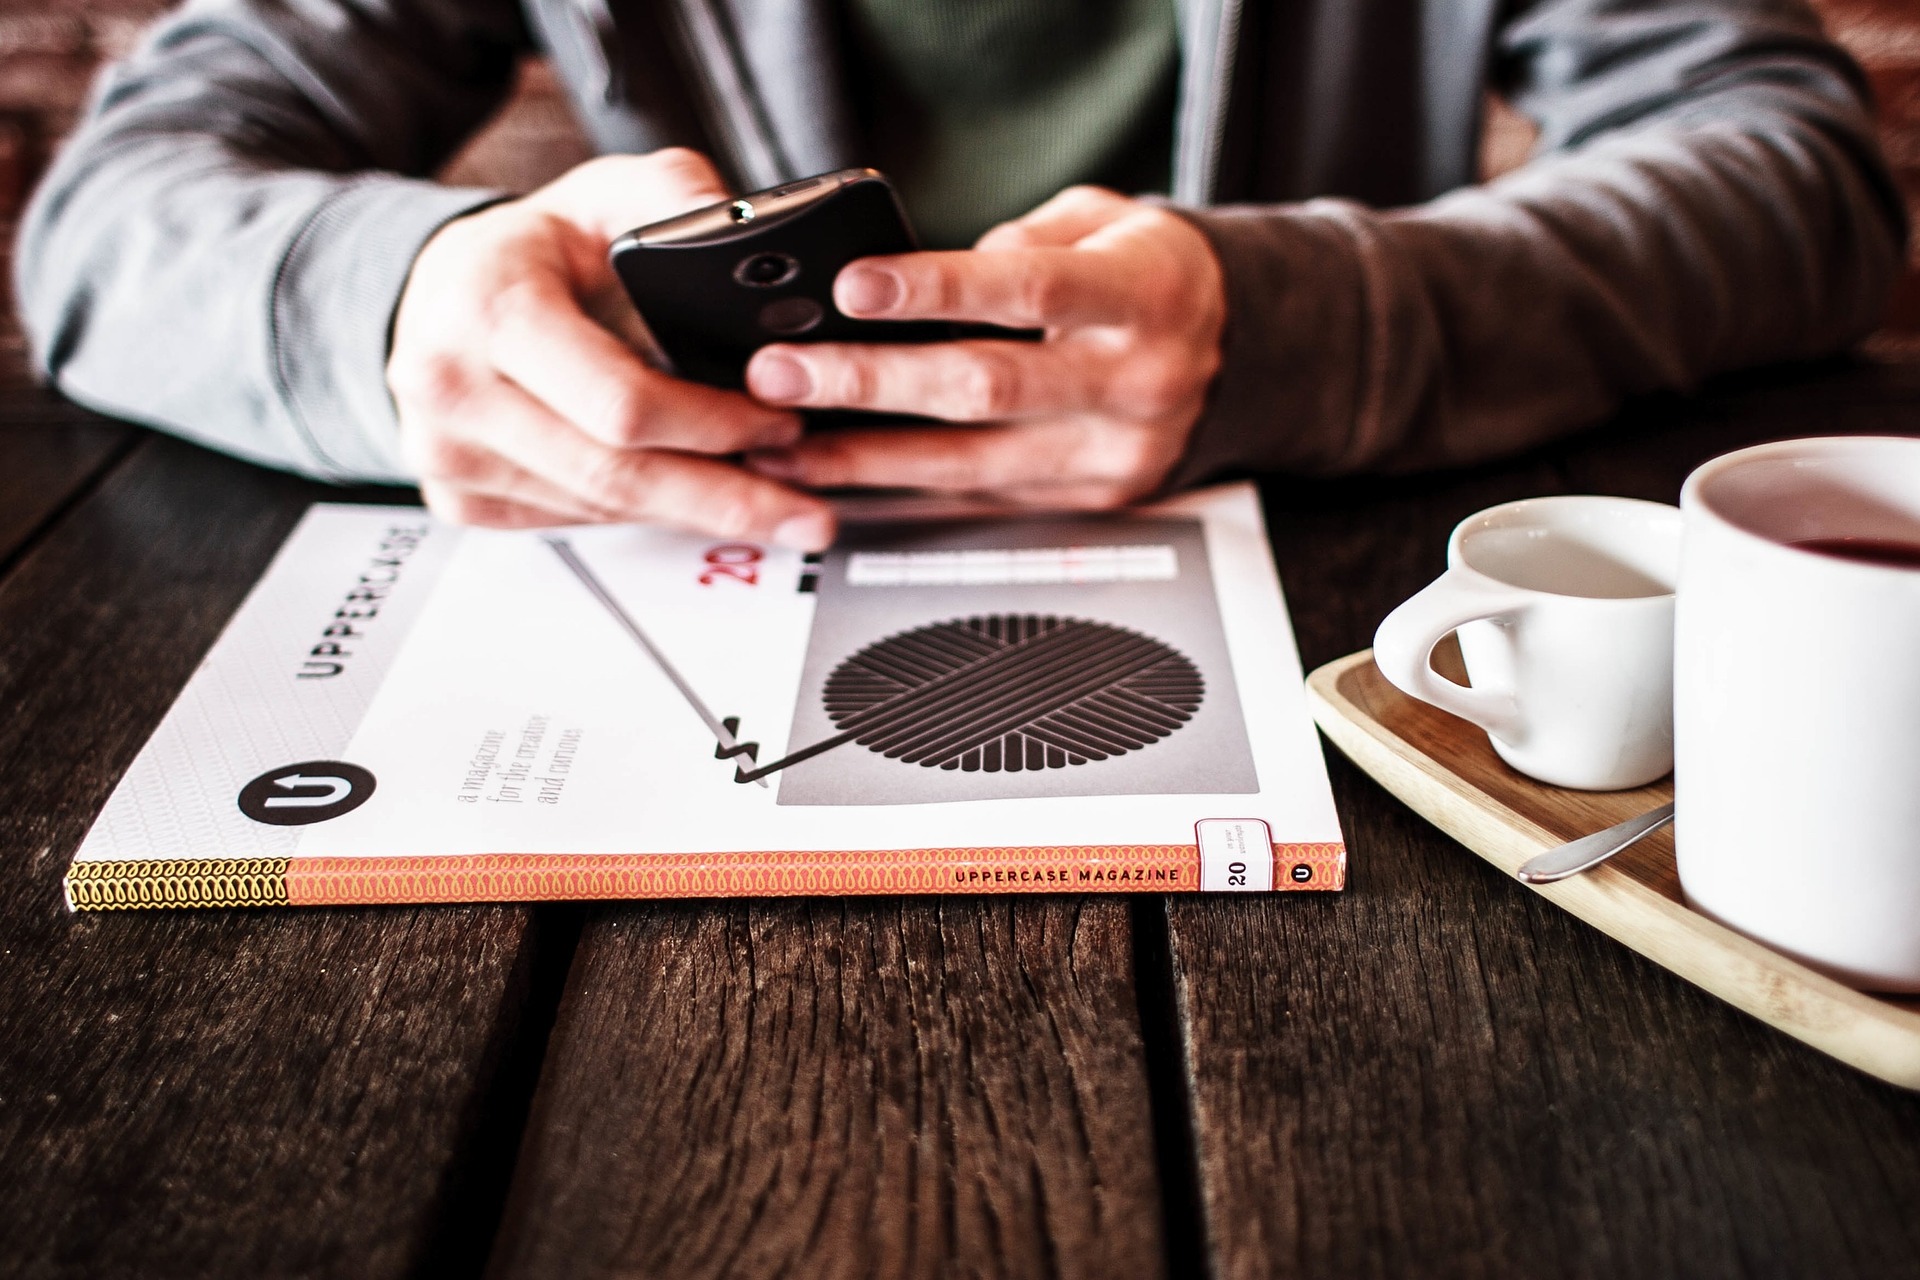 Mann liest am Smartphone mit Kaffee und Magazin